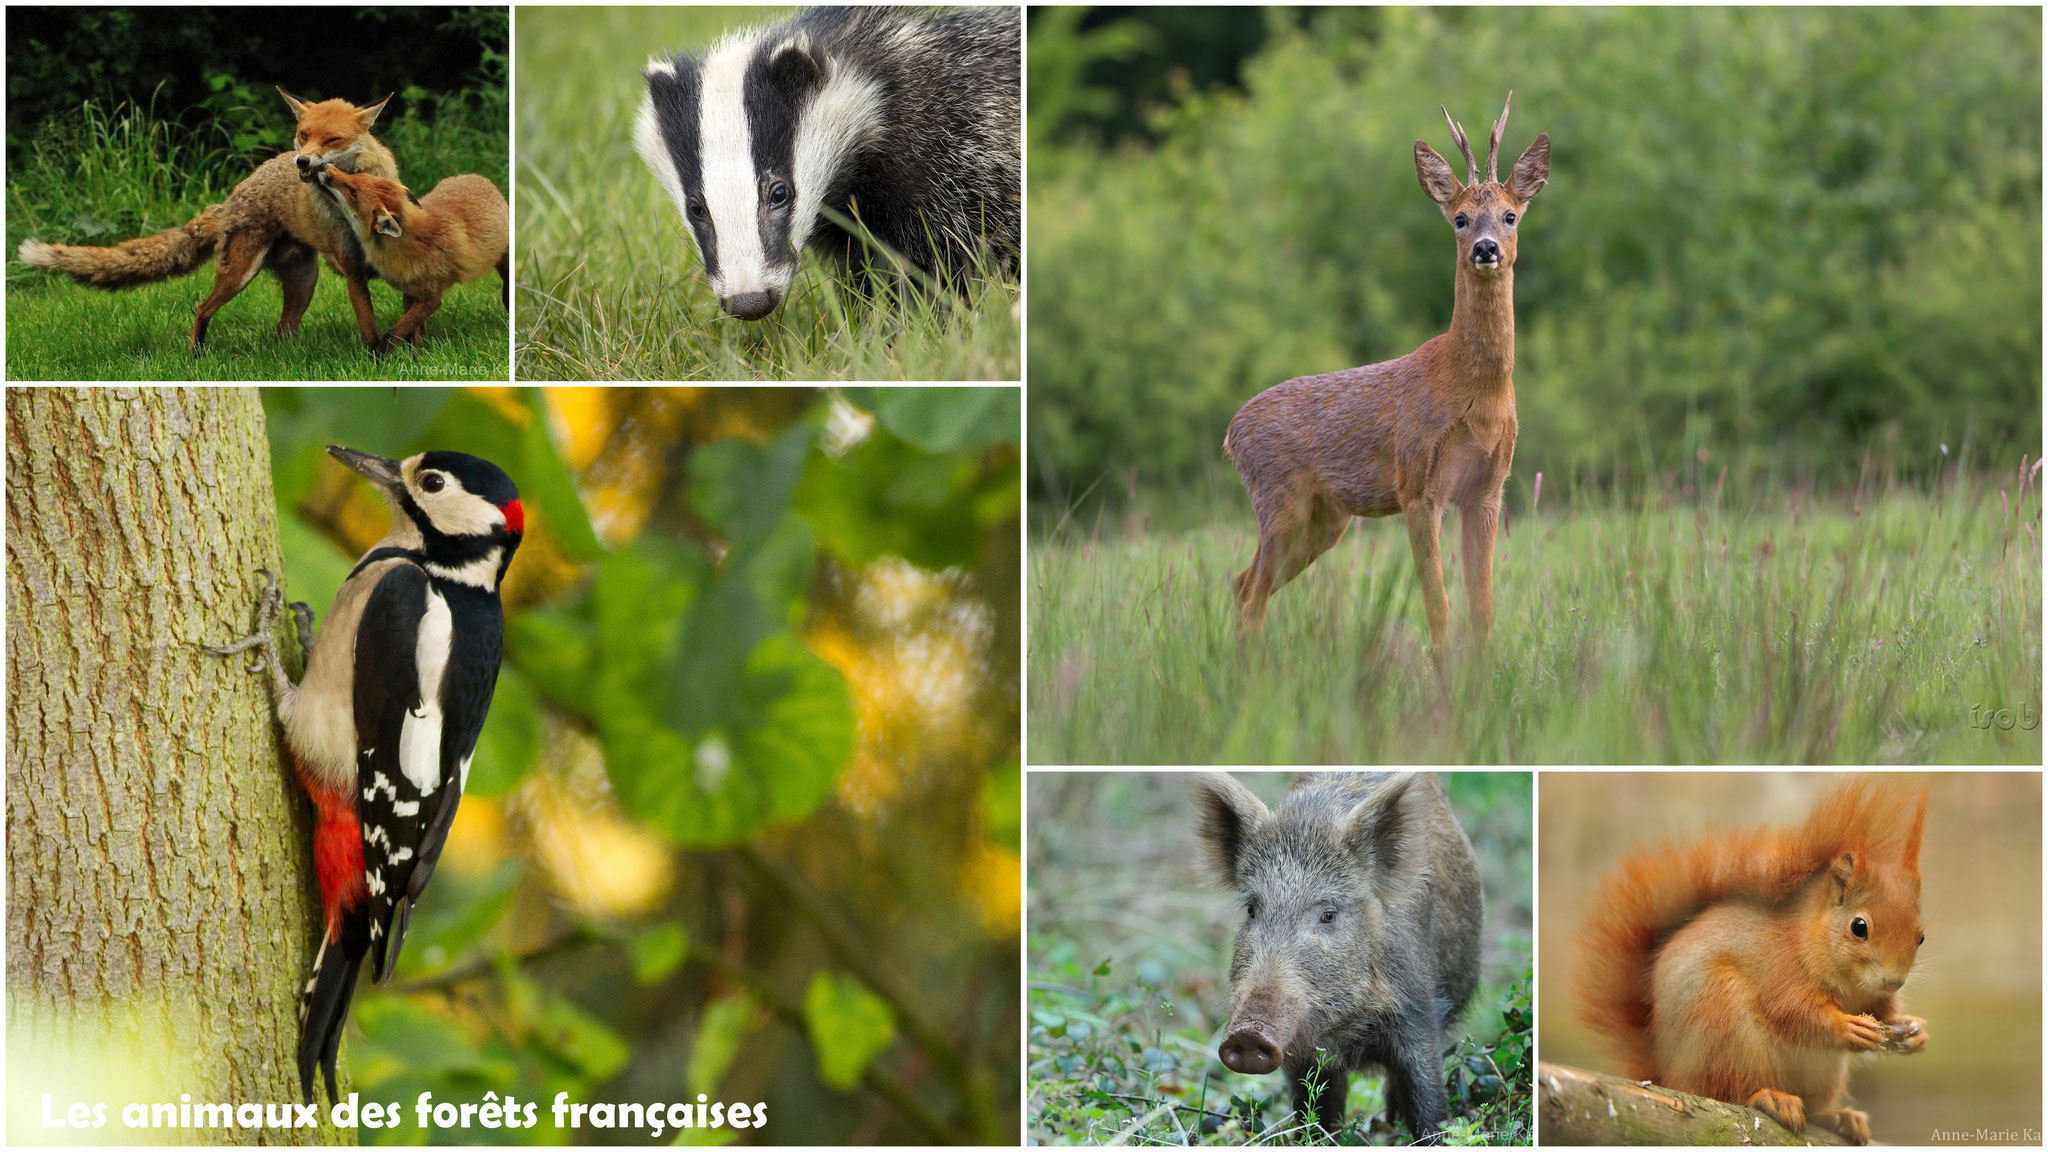 Les animaux des forêts françaises